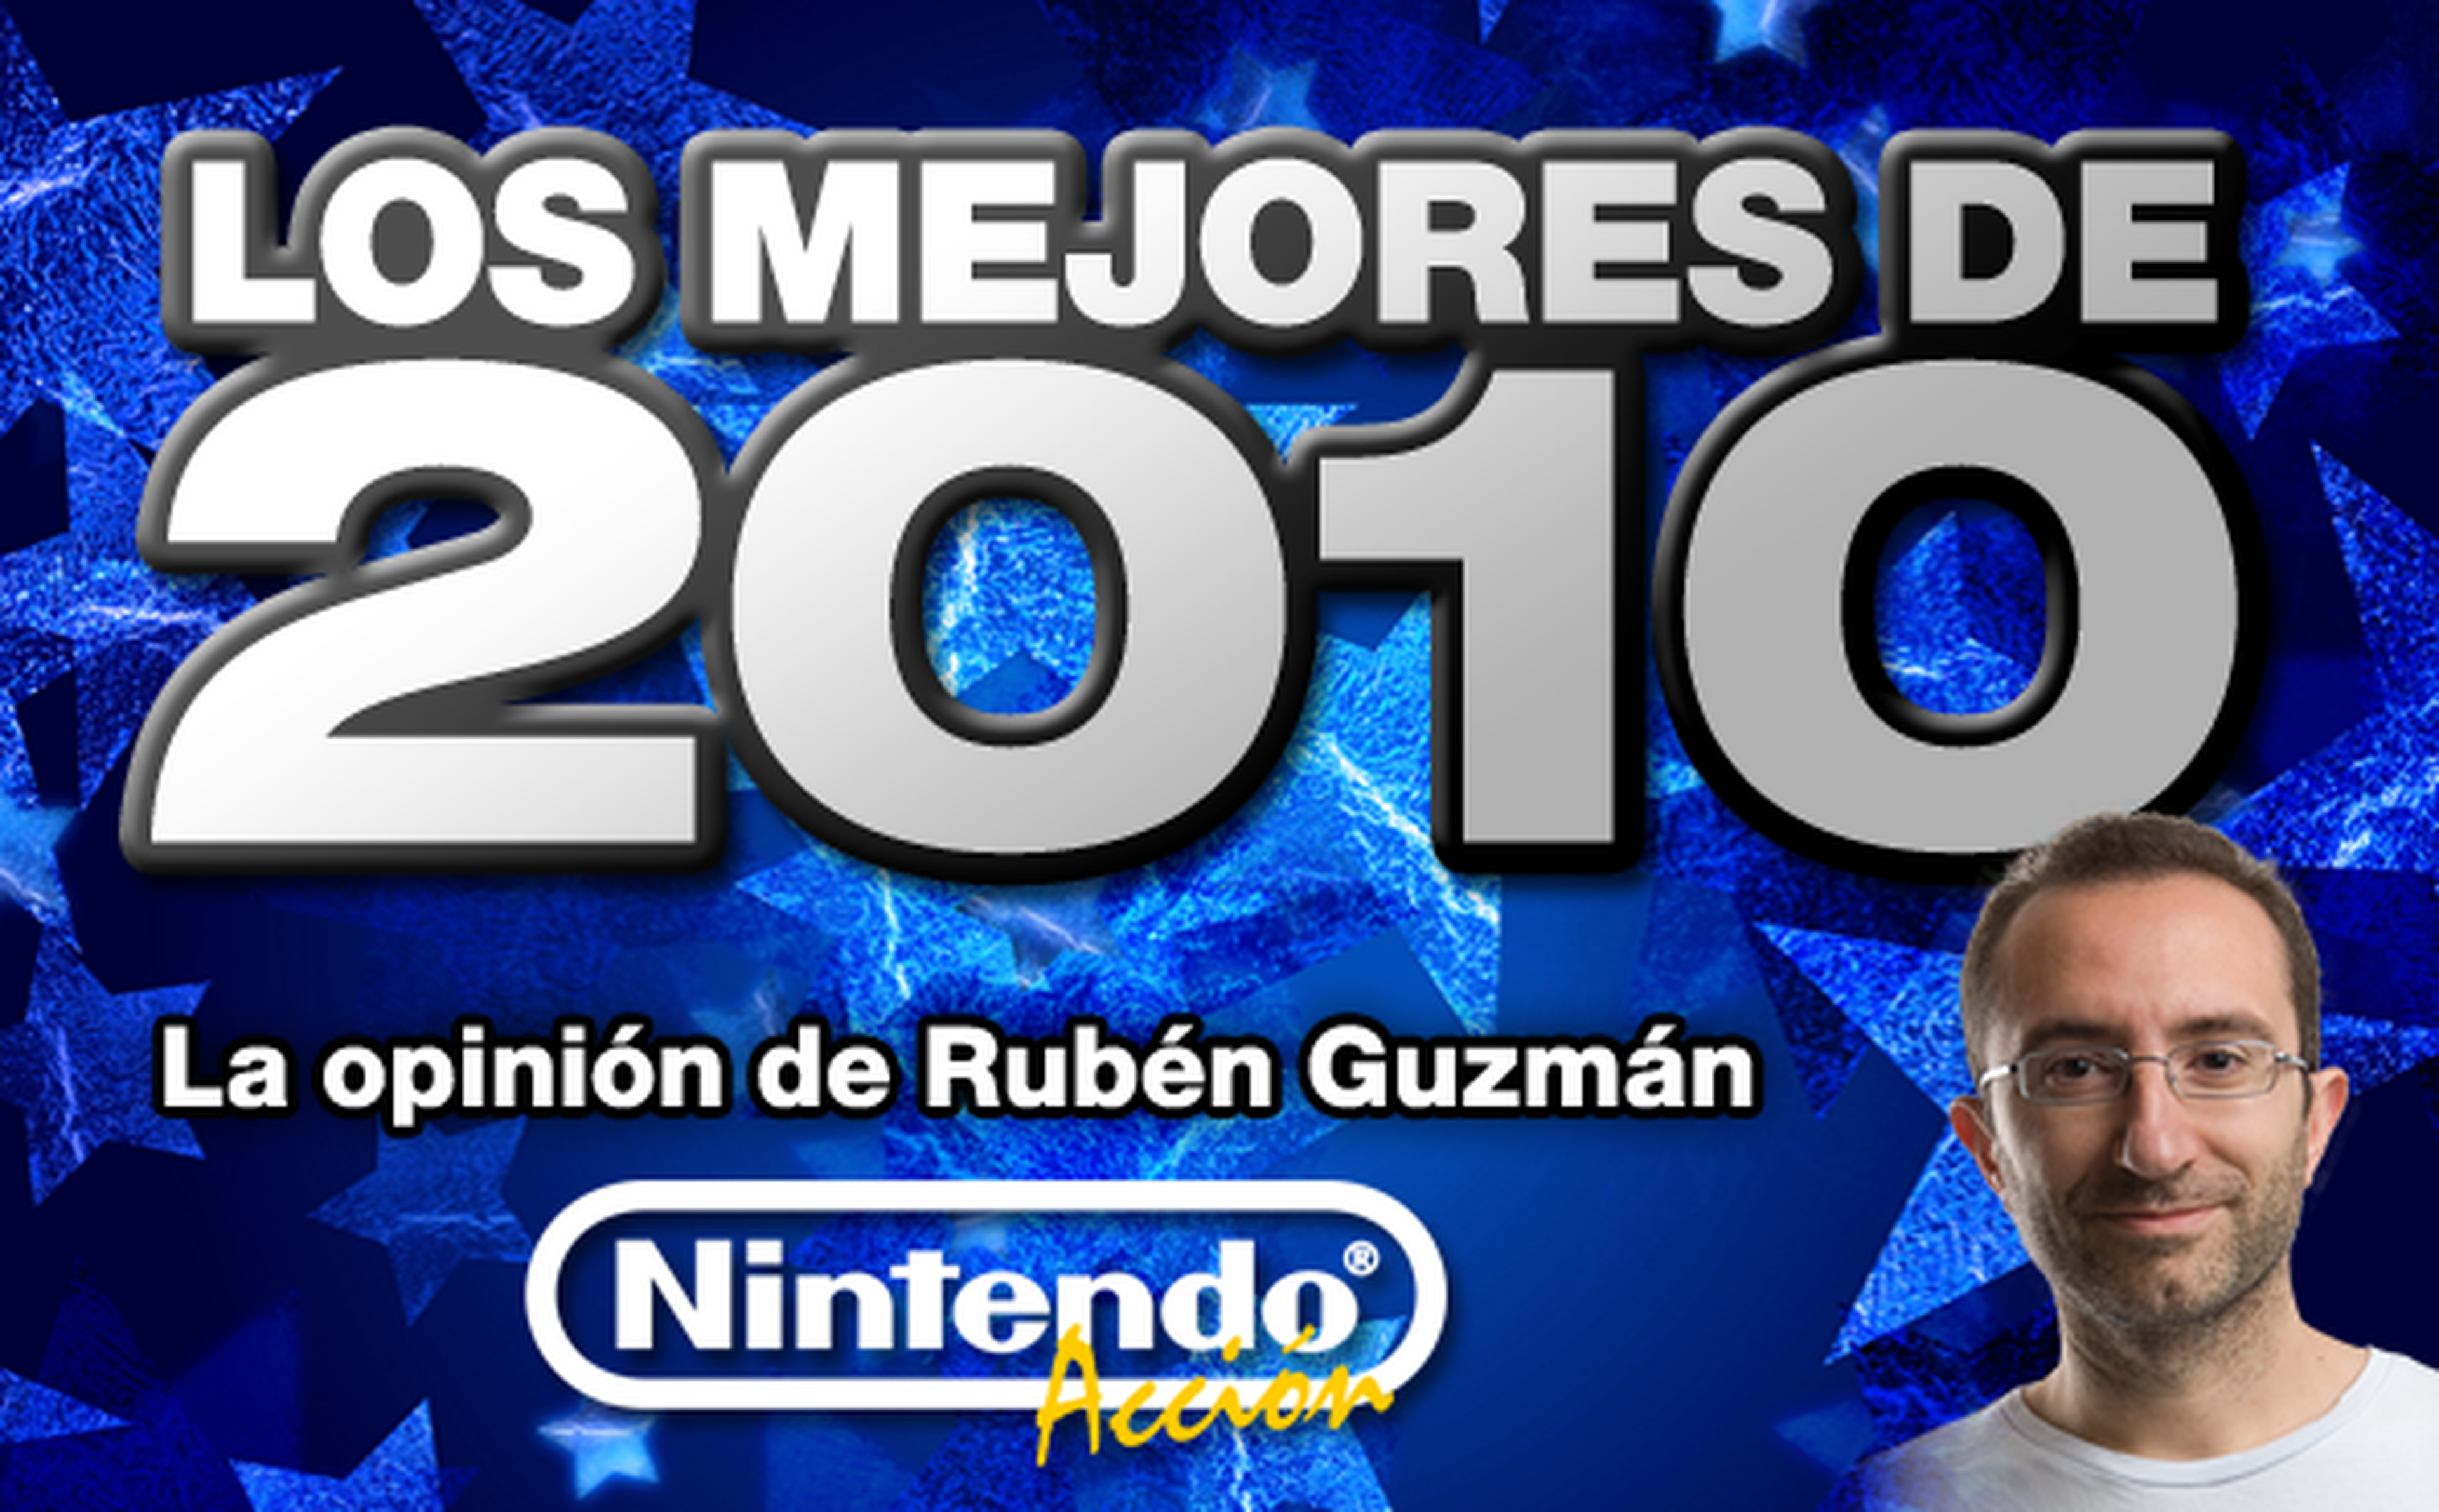 Los mejores de 2010: Rubén Guzmán